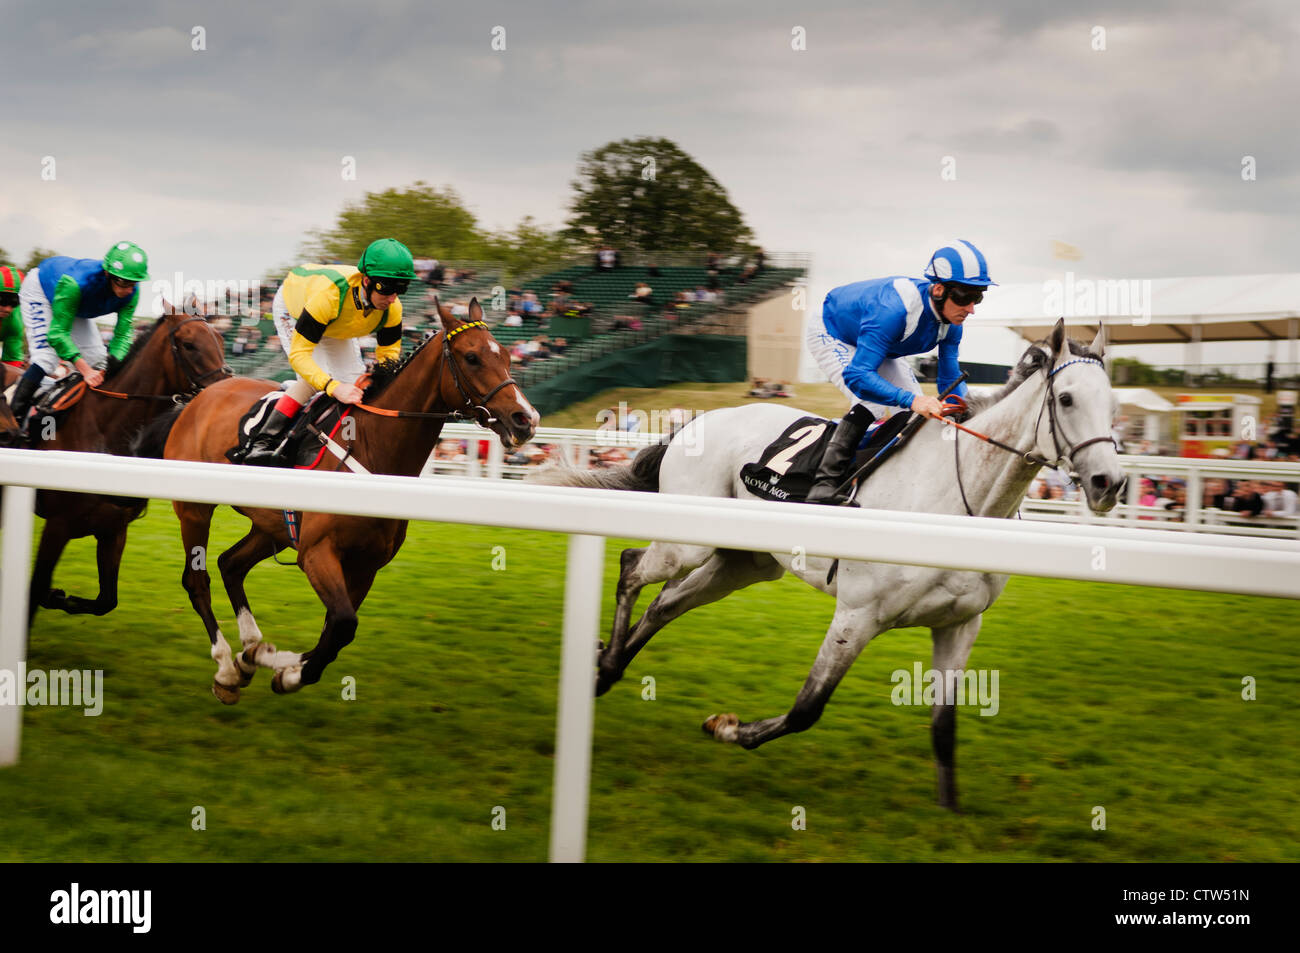 Horseracing at the Royal Ascot. Stock Photo